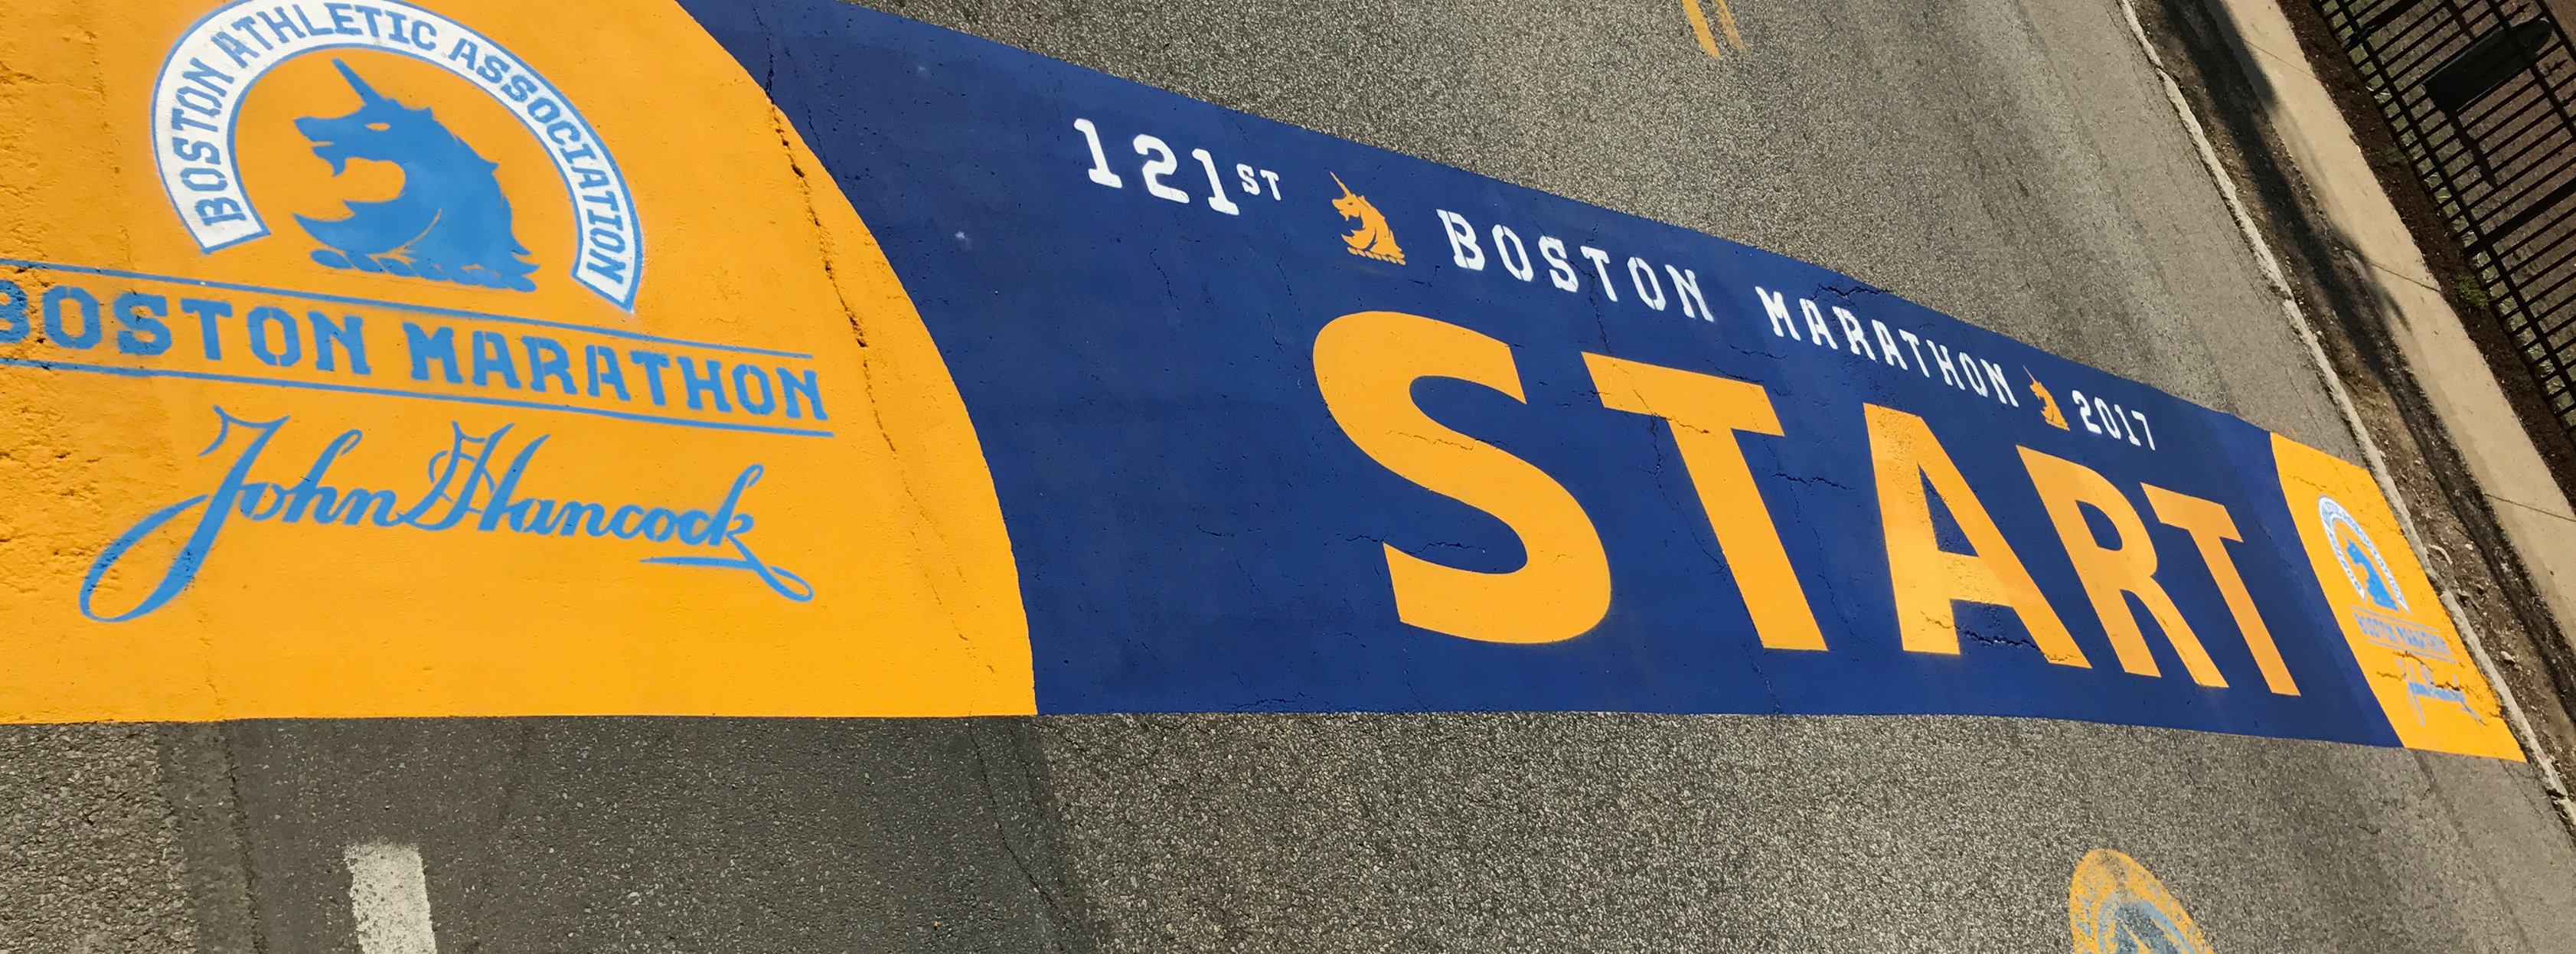 Boston Marathon 2017 resultados fotos transmision en vivo locos por correr 02